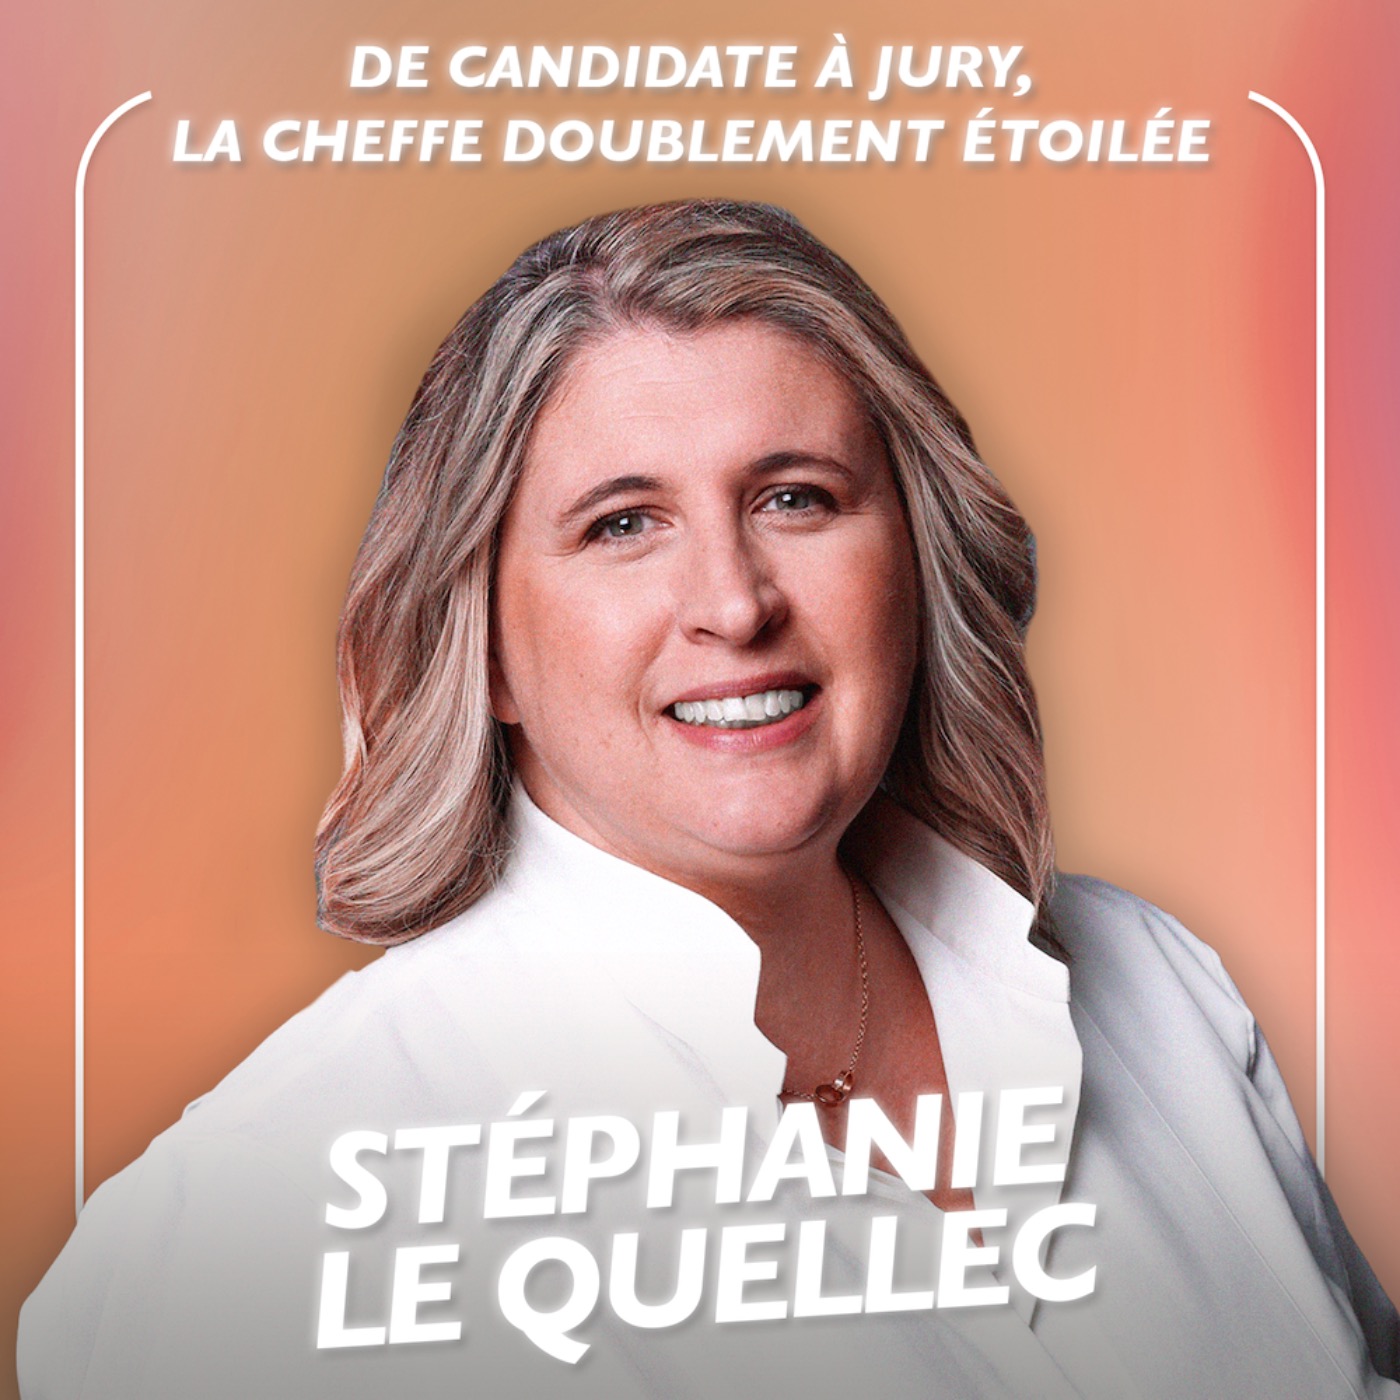 [SPÉCIALE TOP CHEF] De candidate à jury, la cheffe doublement étoilée Stéphanie Le Quellec